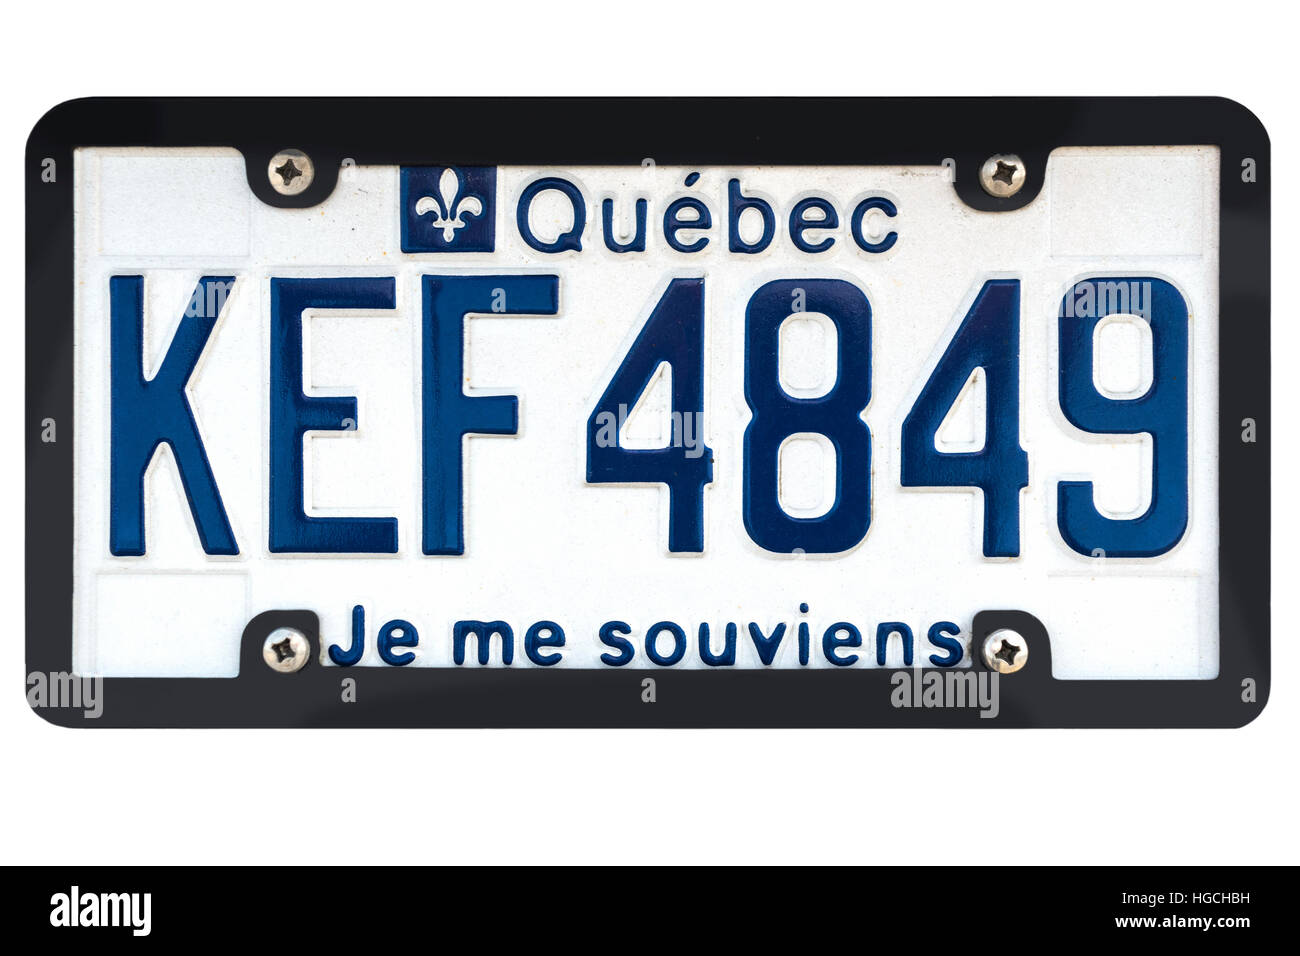 Matrícula de Québec; número de matrícula del vehículo. Québec Canadá 'Je me souviens' plato. Foto de stock